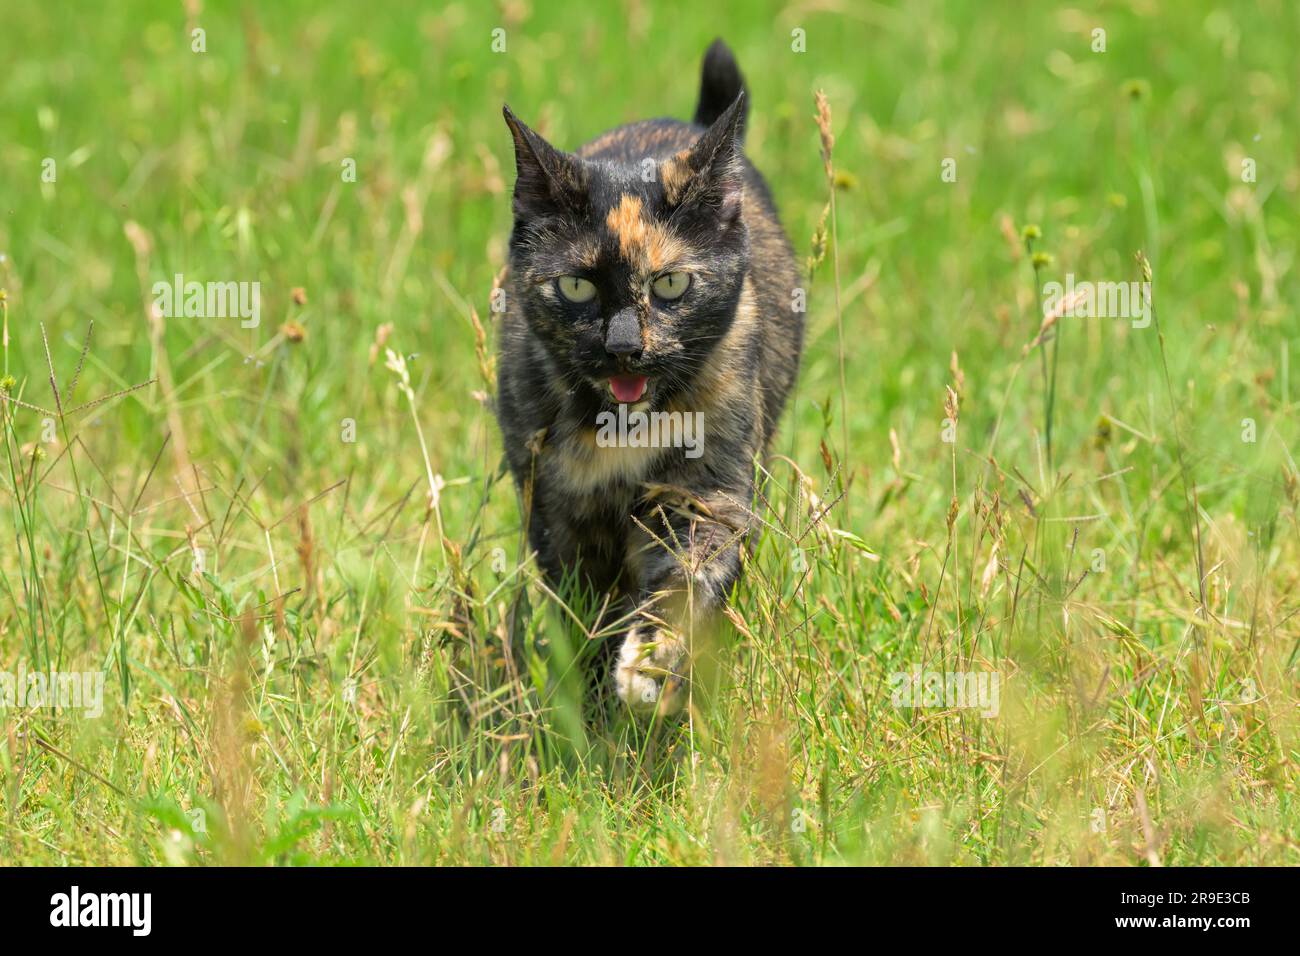 Le chat tortoiseshell avance vers le spectateur en herbe lors d'une journée de printemps ensoleillée Banque D'Images